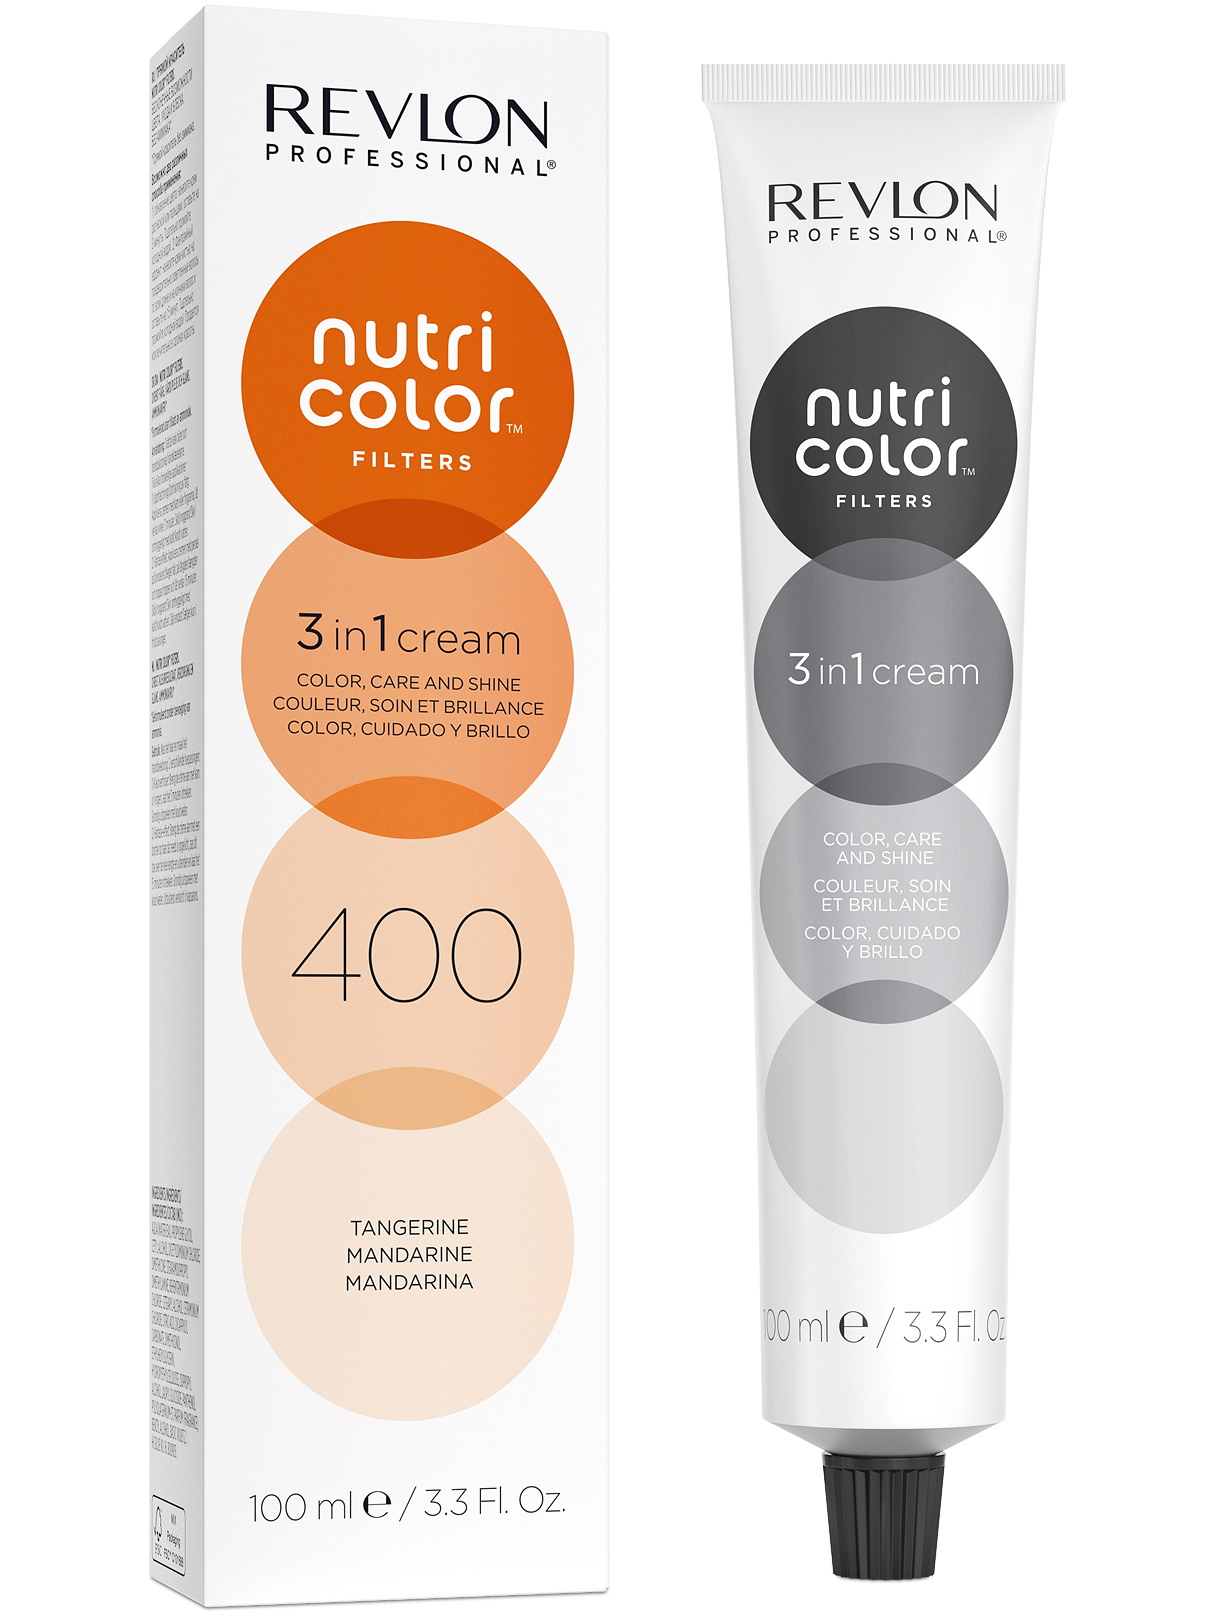 Прямой краситель NUTRI COLOR FILTERS REVLON PROFESSIONAL 400 мандарин 100 мл красочные 16 цветов тени для век матовый перламутровый палитра теней для начинающих